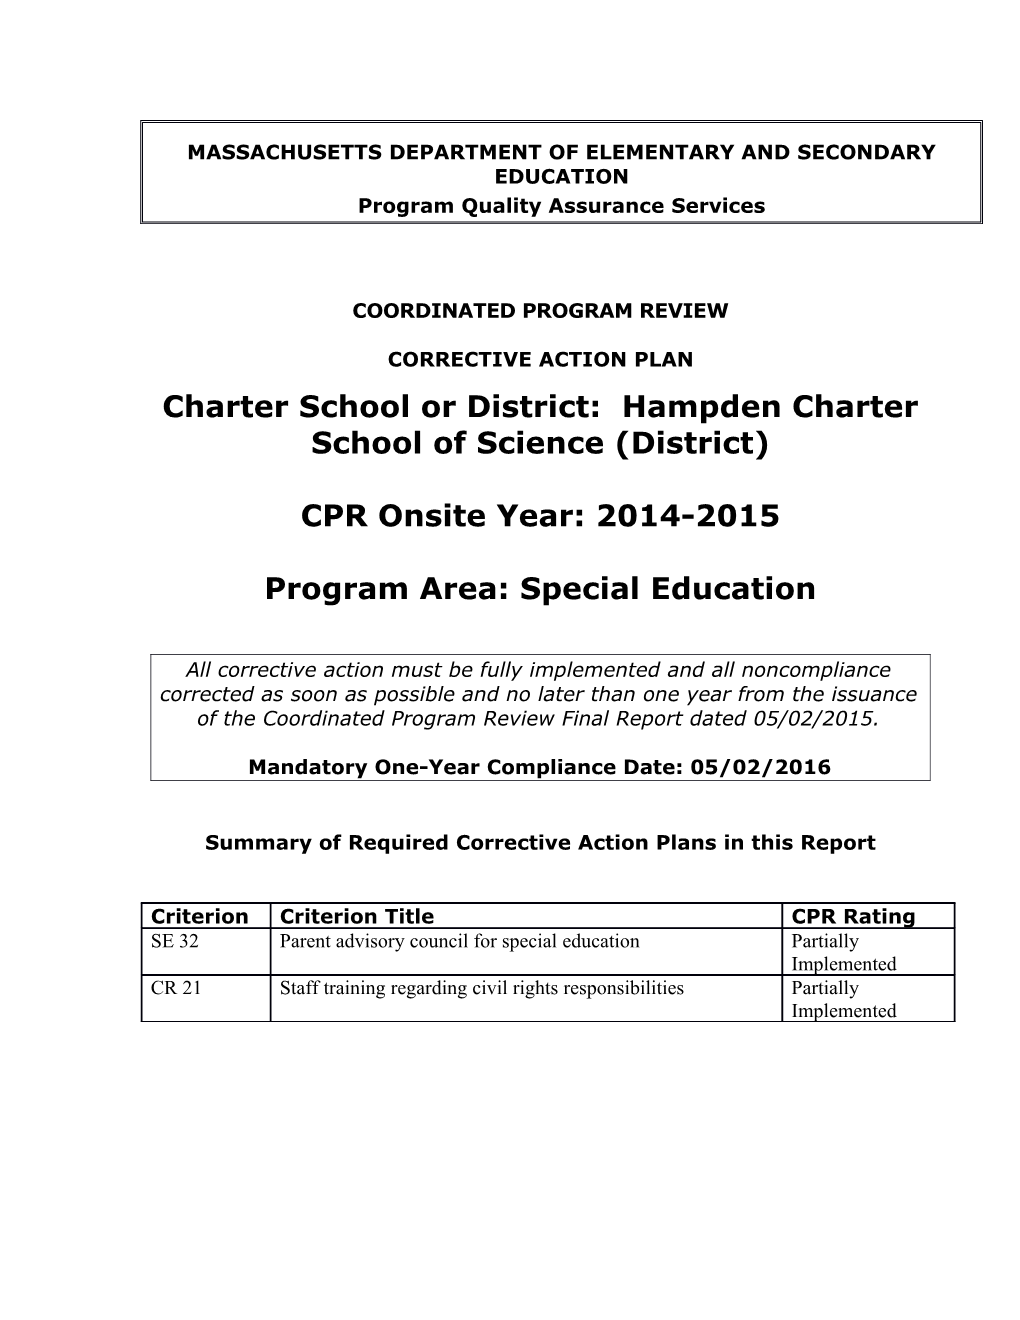 Hampden Charter School of Science CAP 2015